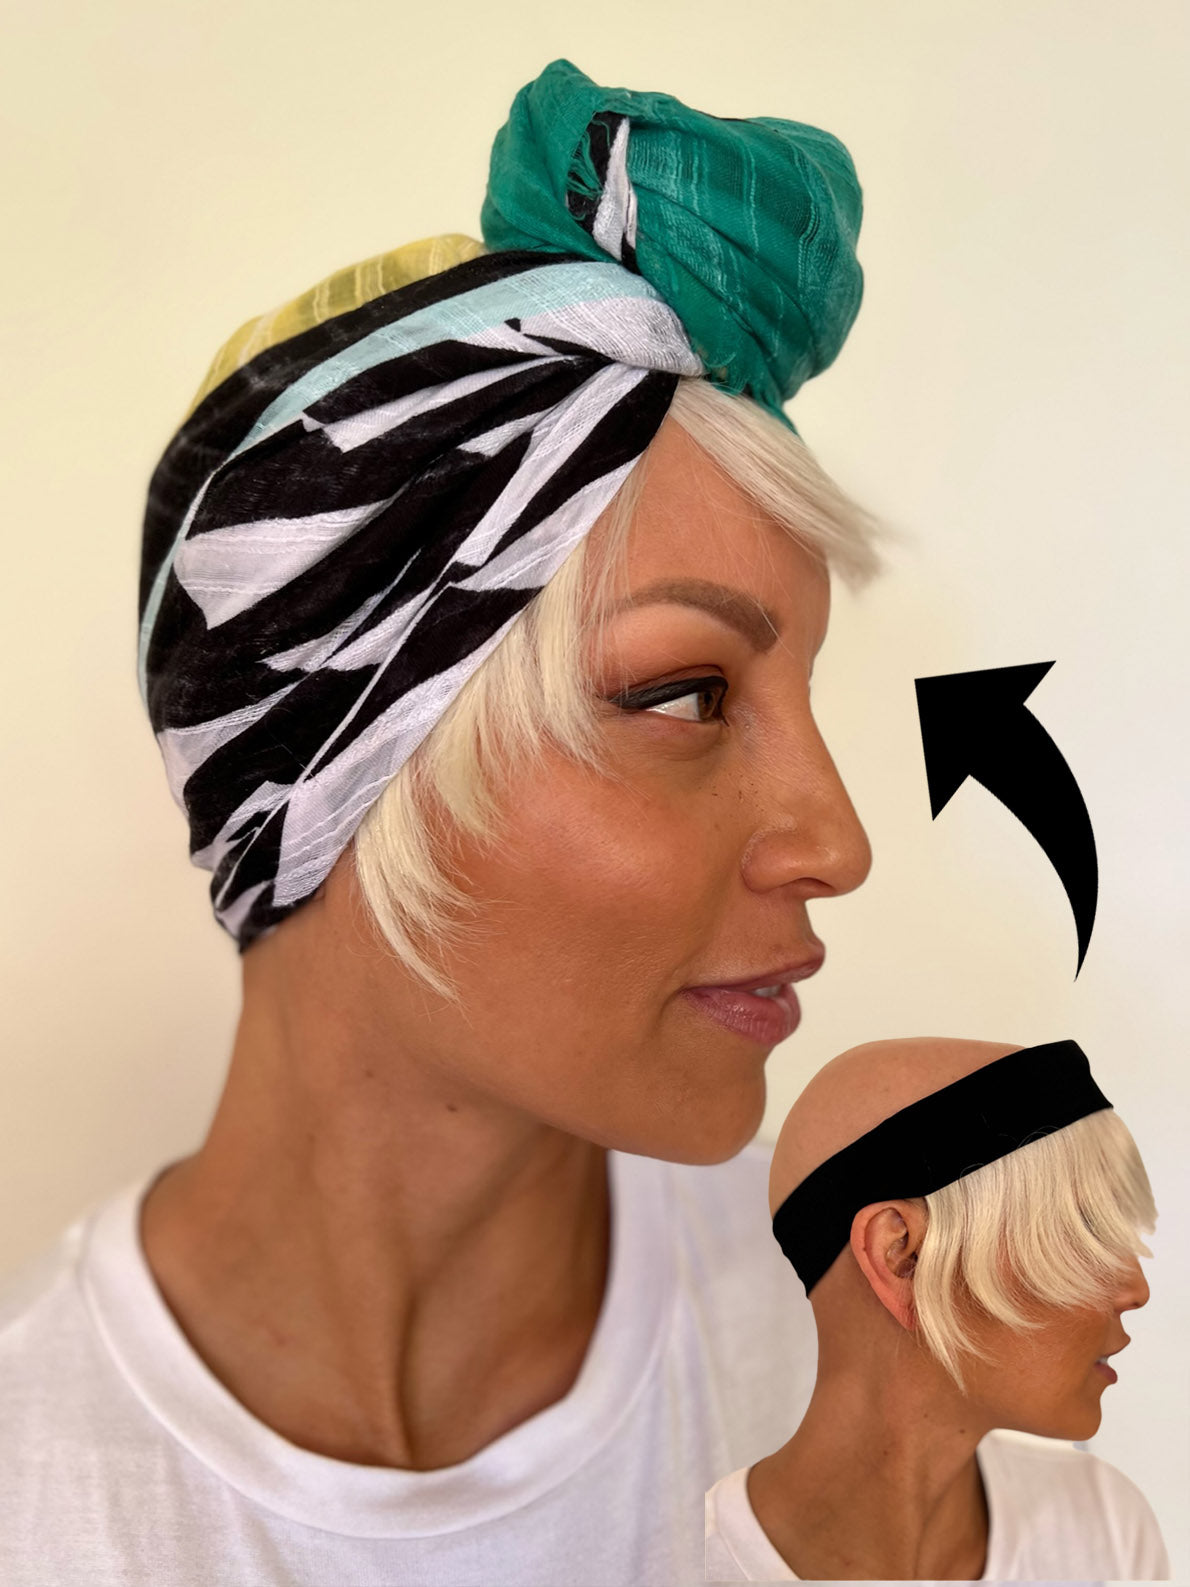 Platinum Blonde Human Hair Fringe for Under Hats